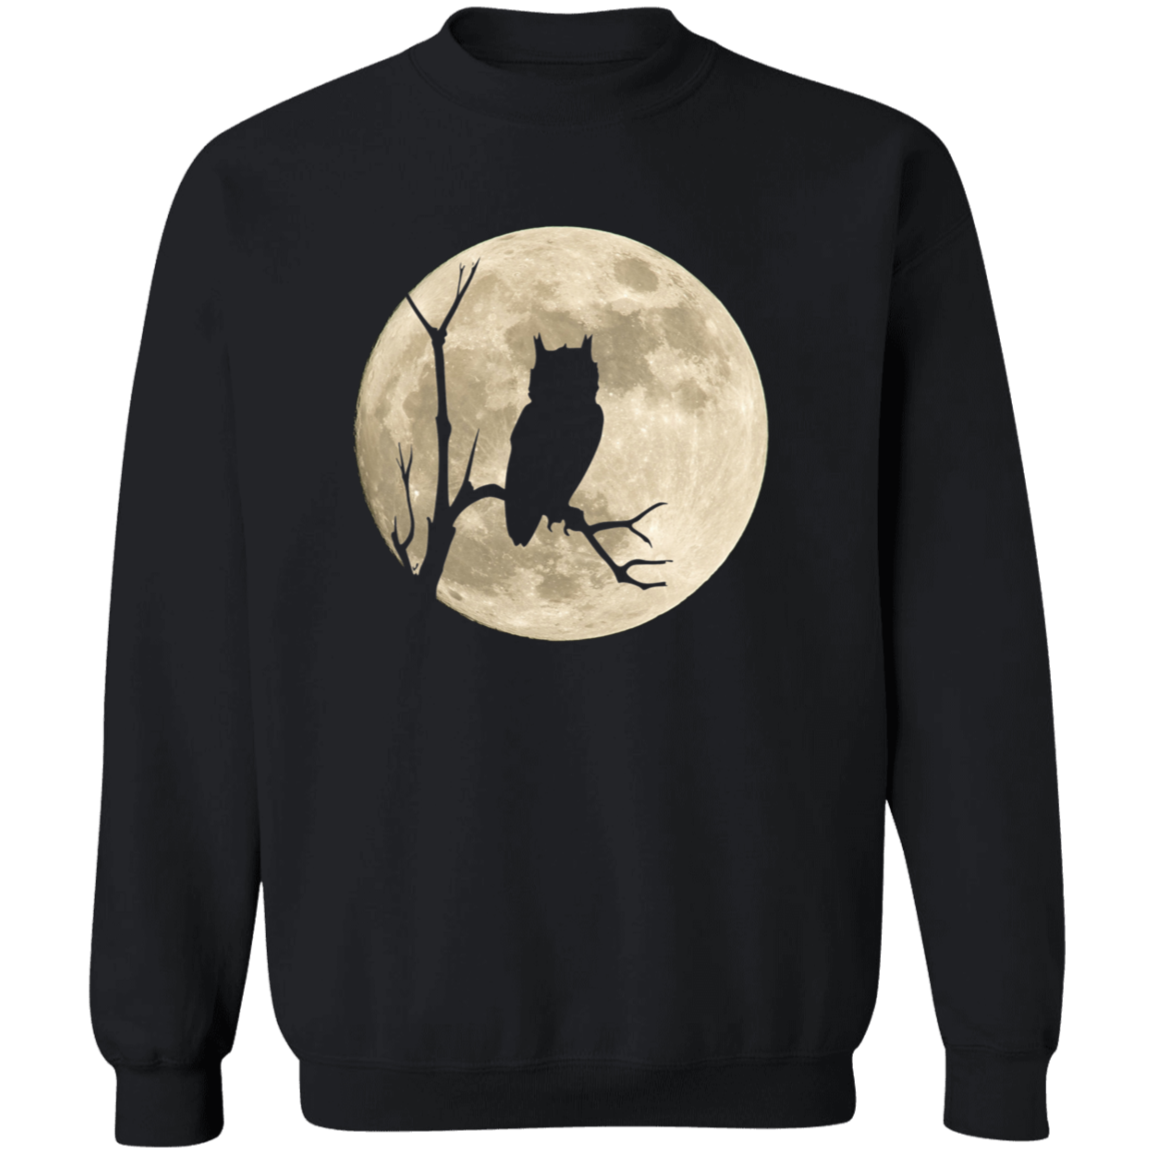 Owl Moon - T-shirts, Hoodies and Sweatshirts